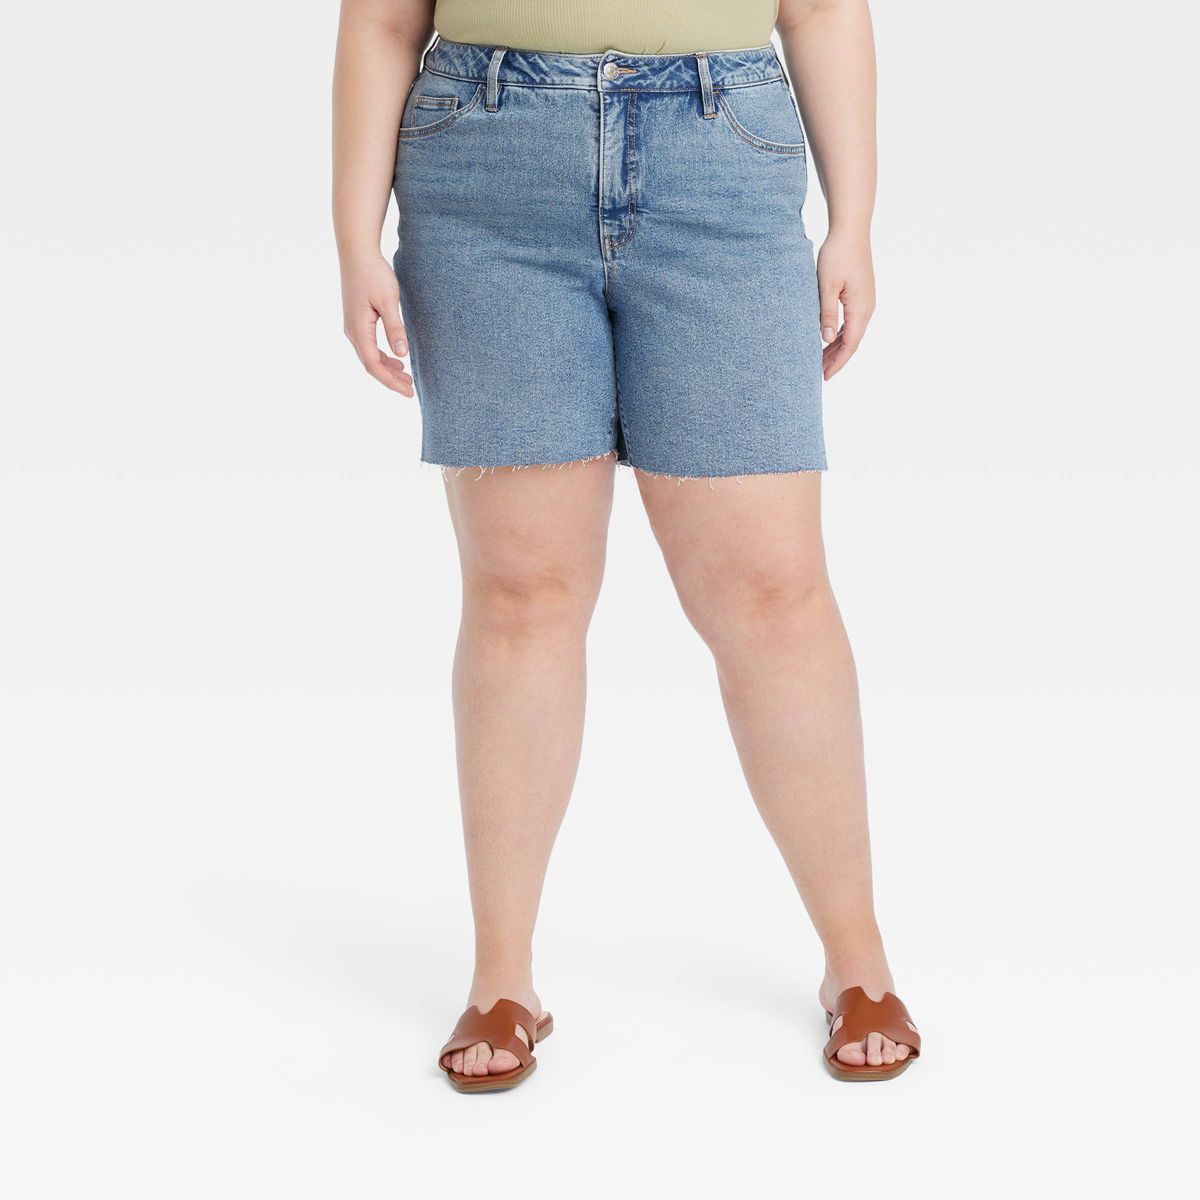 Women's High-Waisted Bermuda Jean Shorts - Ava & Viv™ Medium Wash 16 | Target